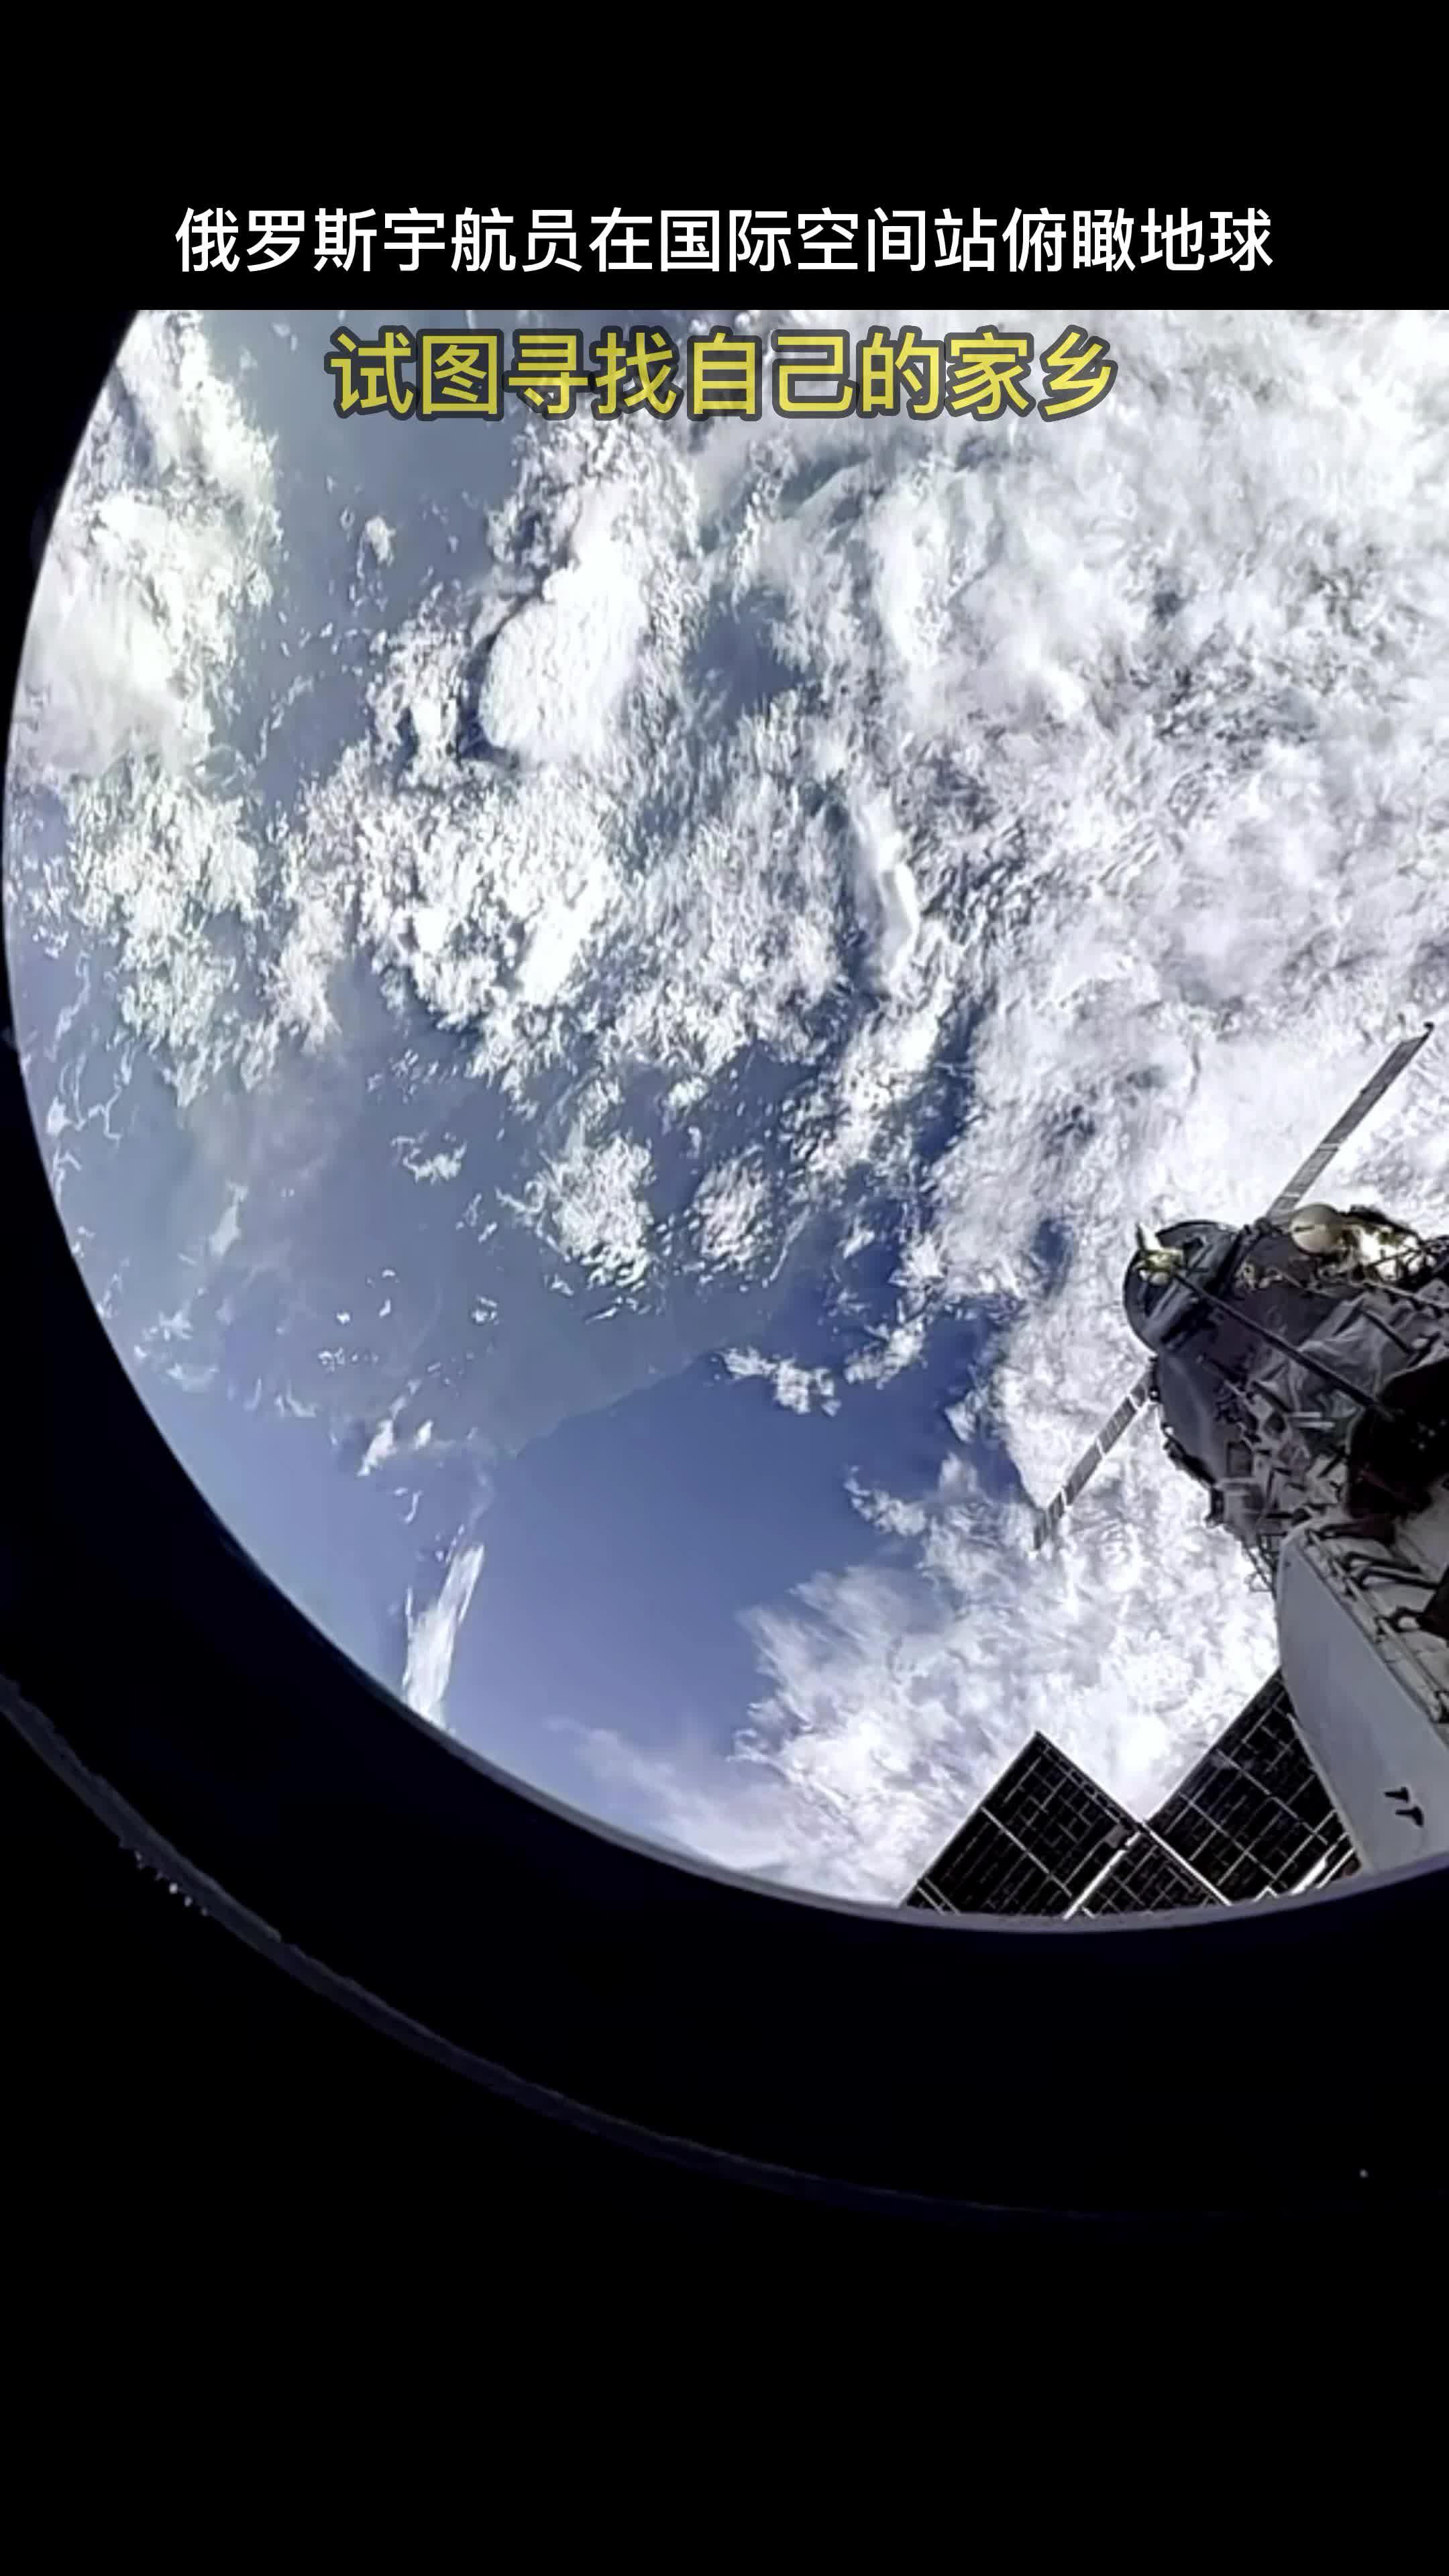 俄罗斯宇航员在国际空间站俯瞰地球,并试图寻找自己的家乡